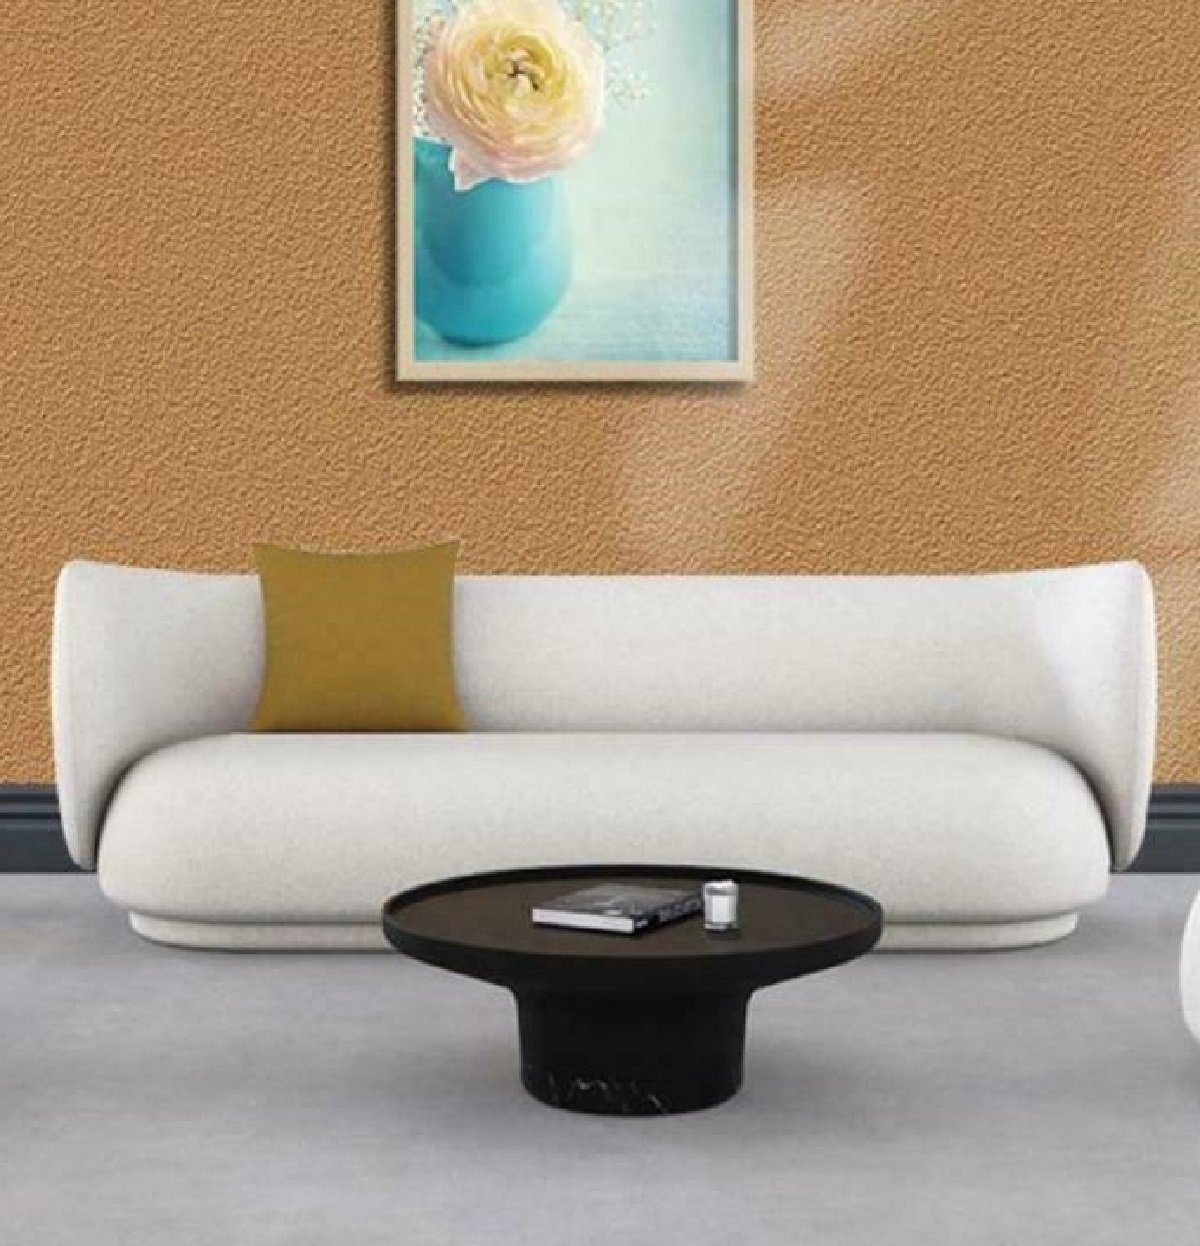 JVmoebel Sofa Weißes Sofa 2-Sitzer Relax Sitz Design Couch Lounge Sofas Möbel, Samt Möbel Weiß | Weiß | Weiß